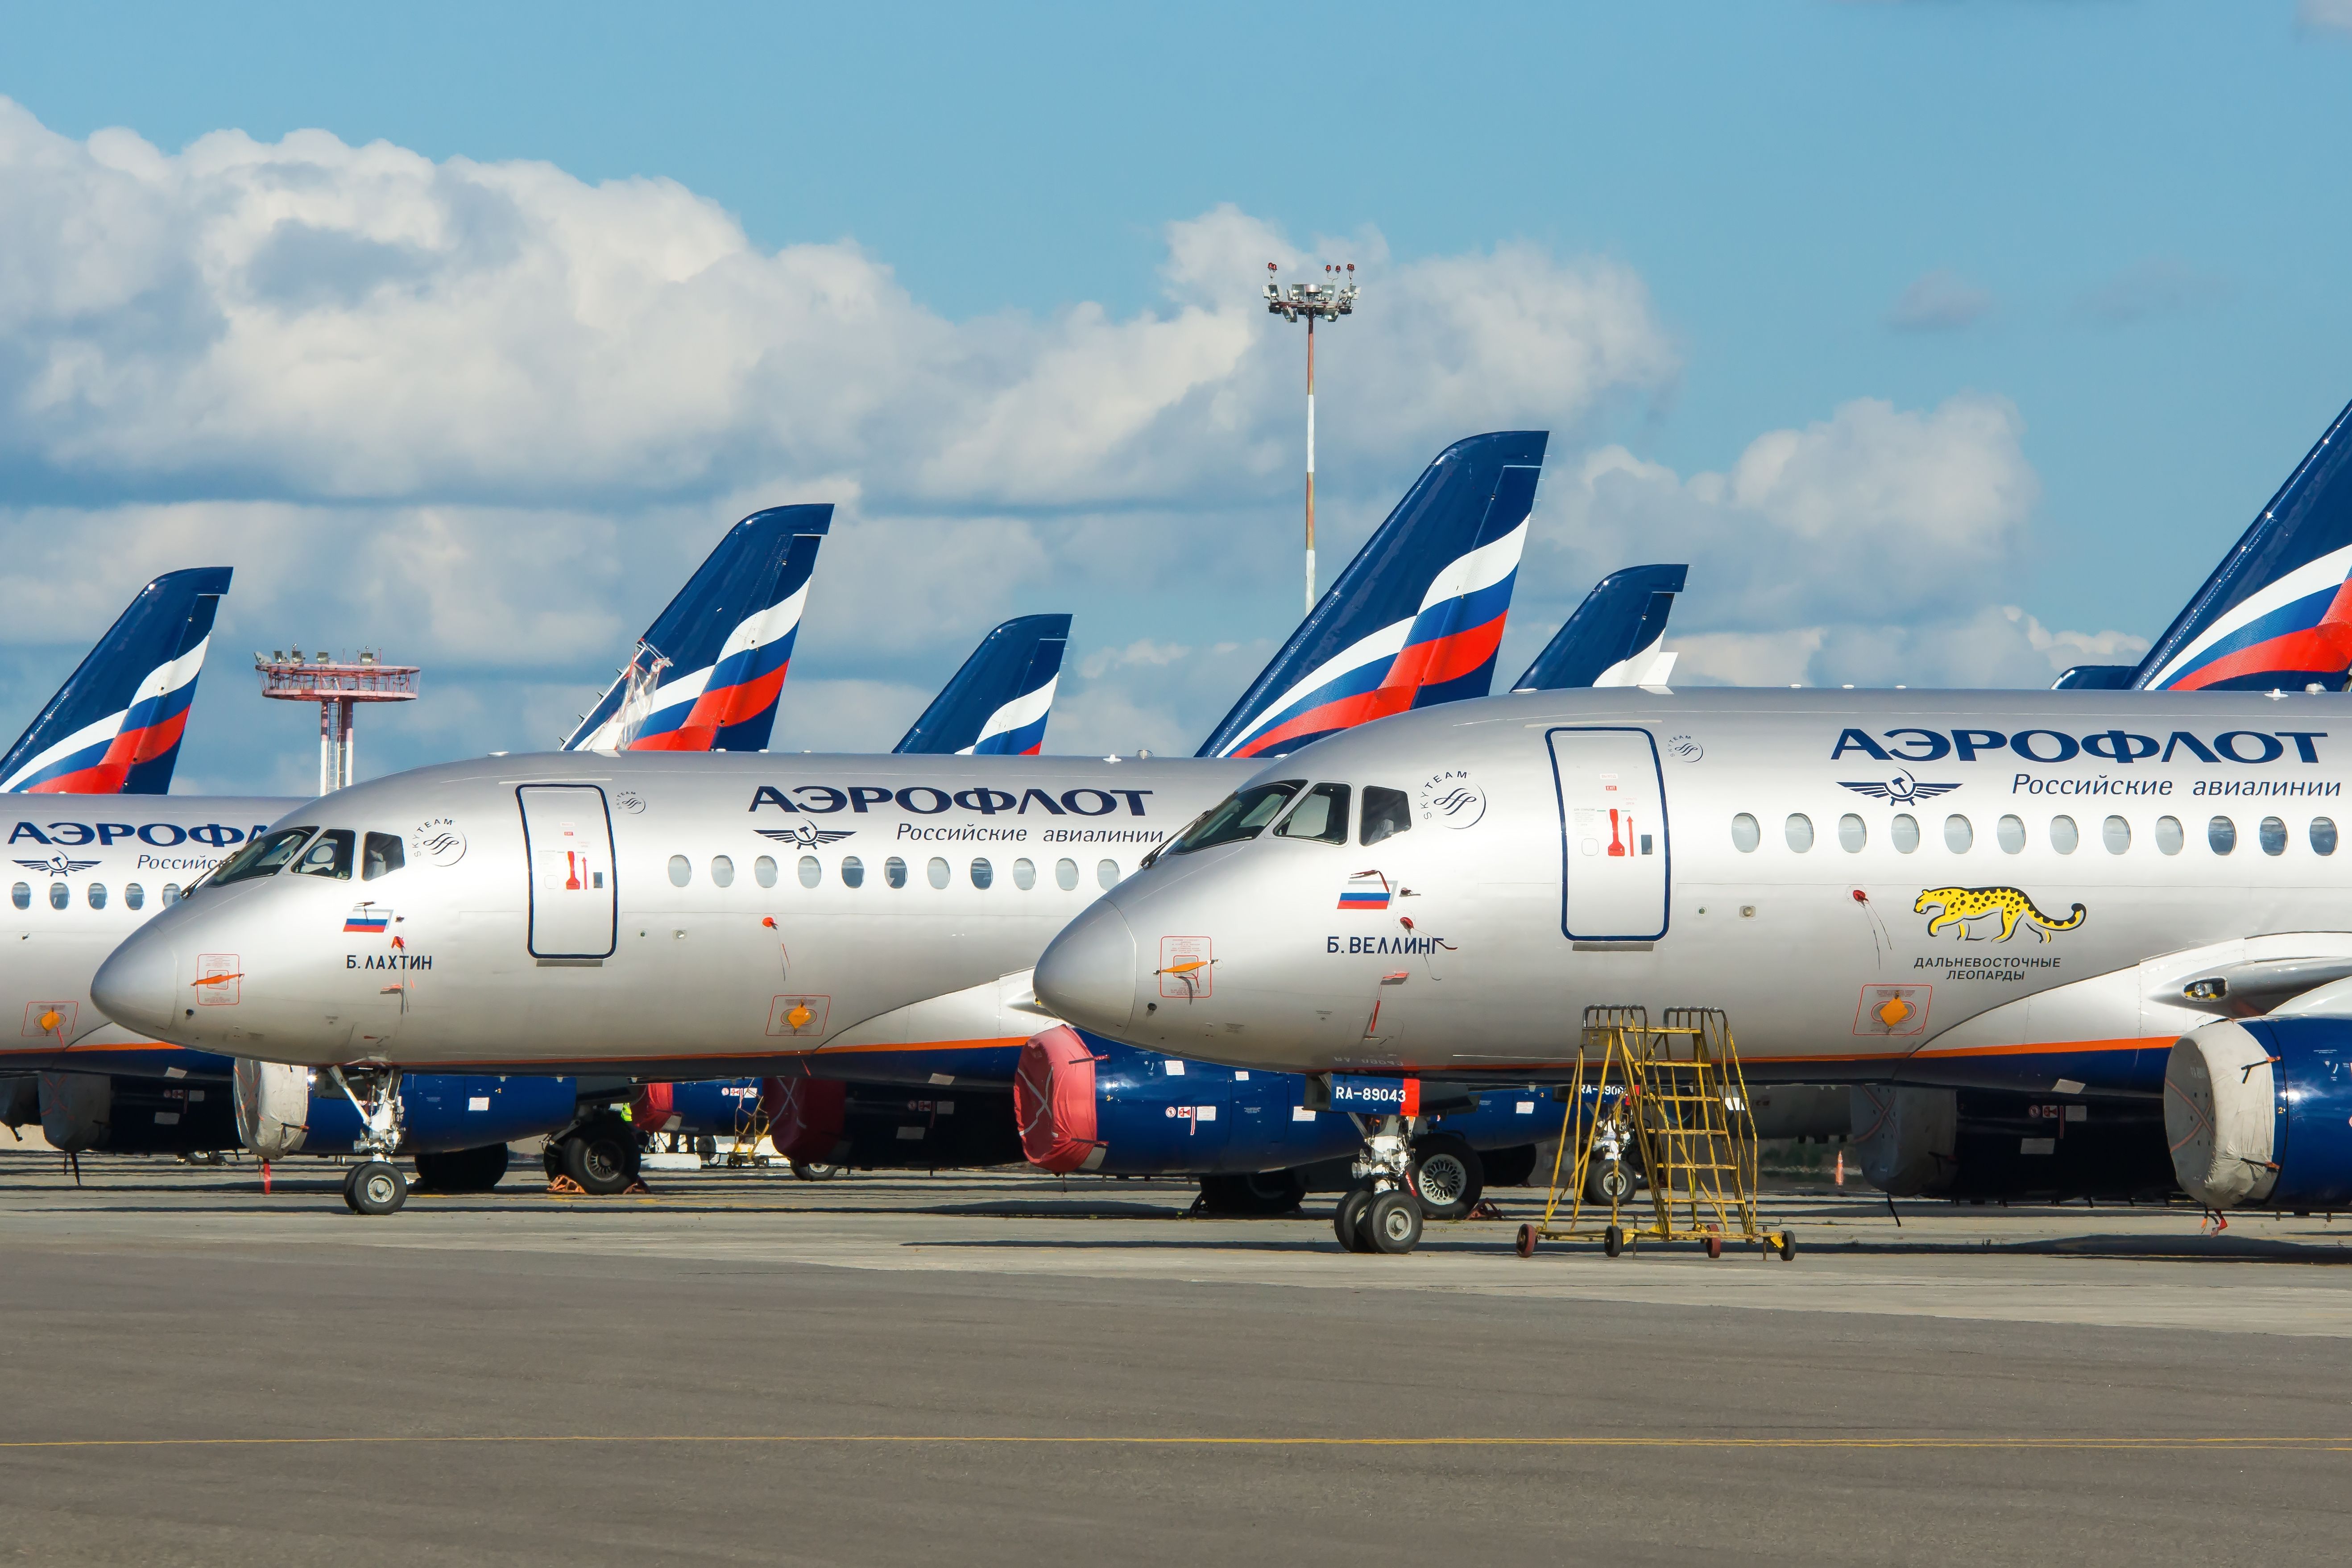 Several Aeroflot Sukhoi Superjet 100s parked side by side.